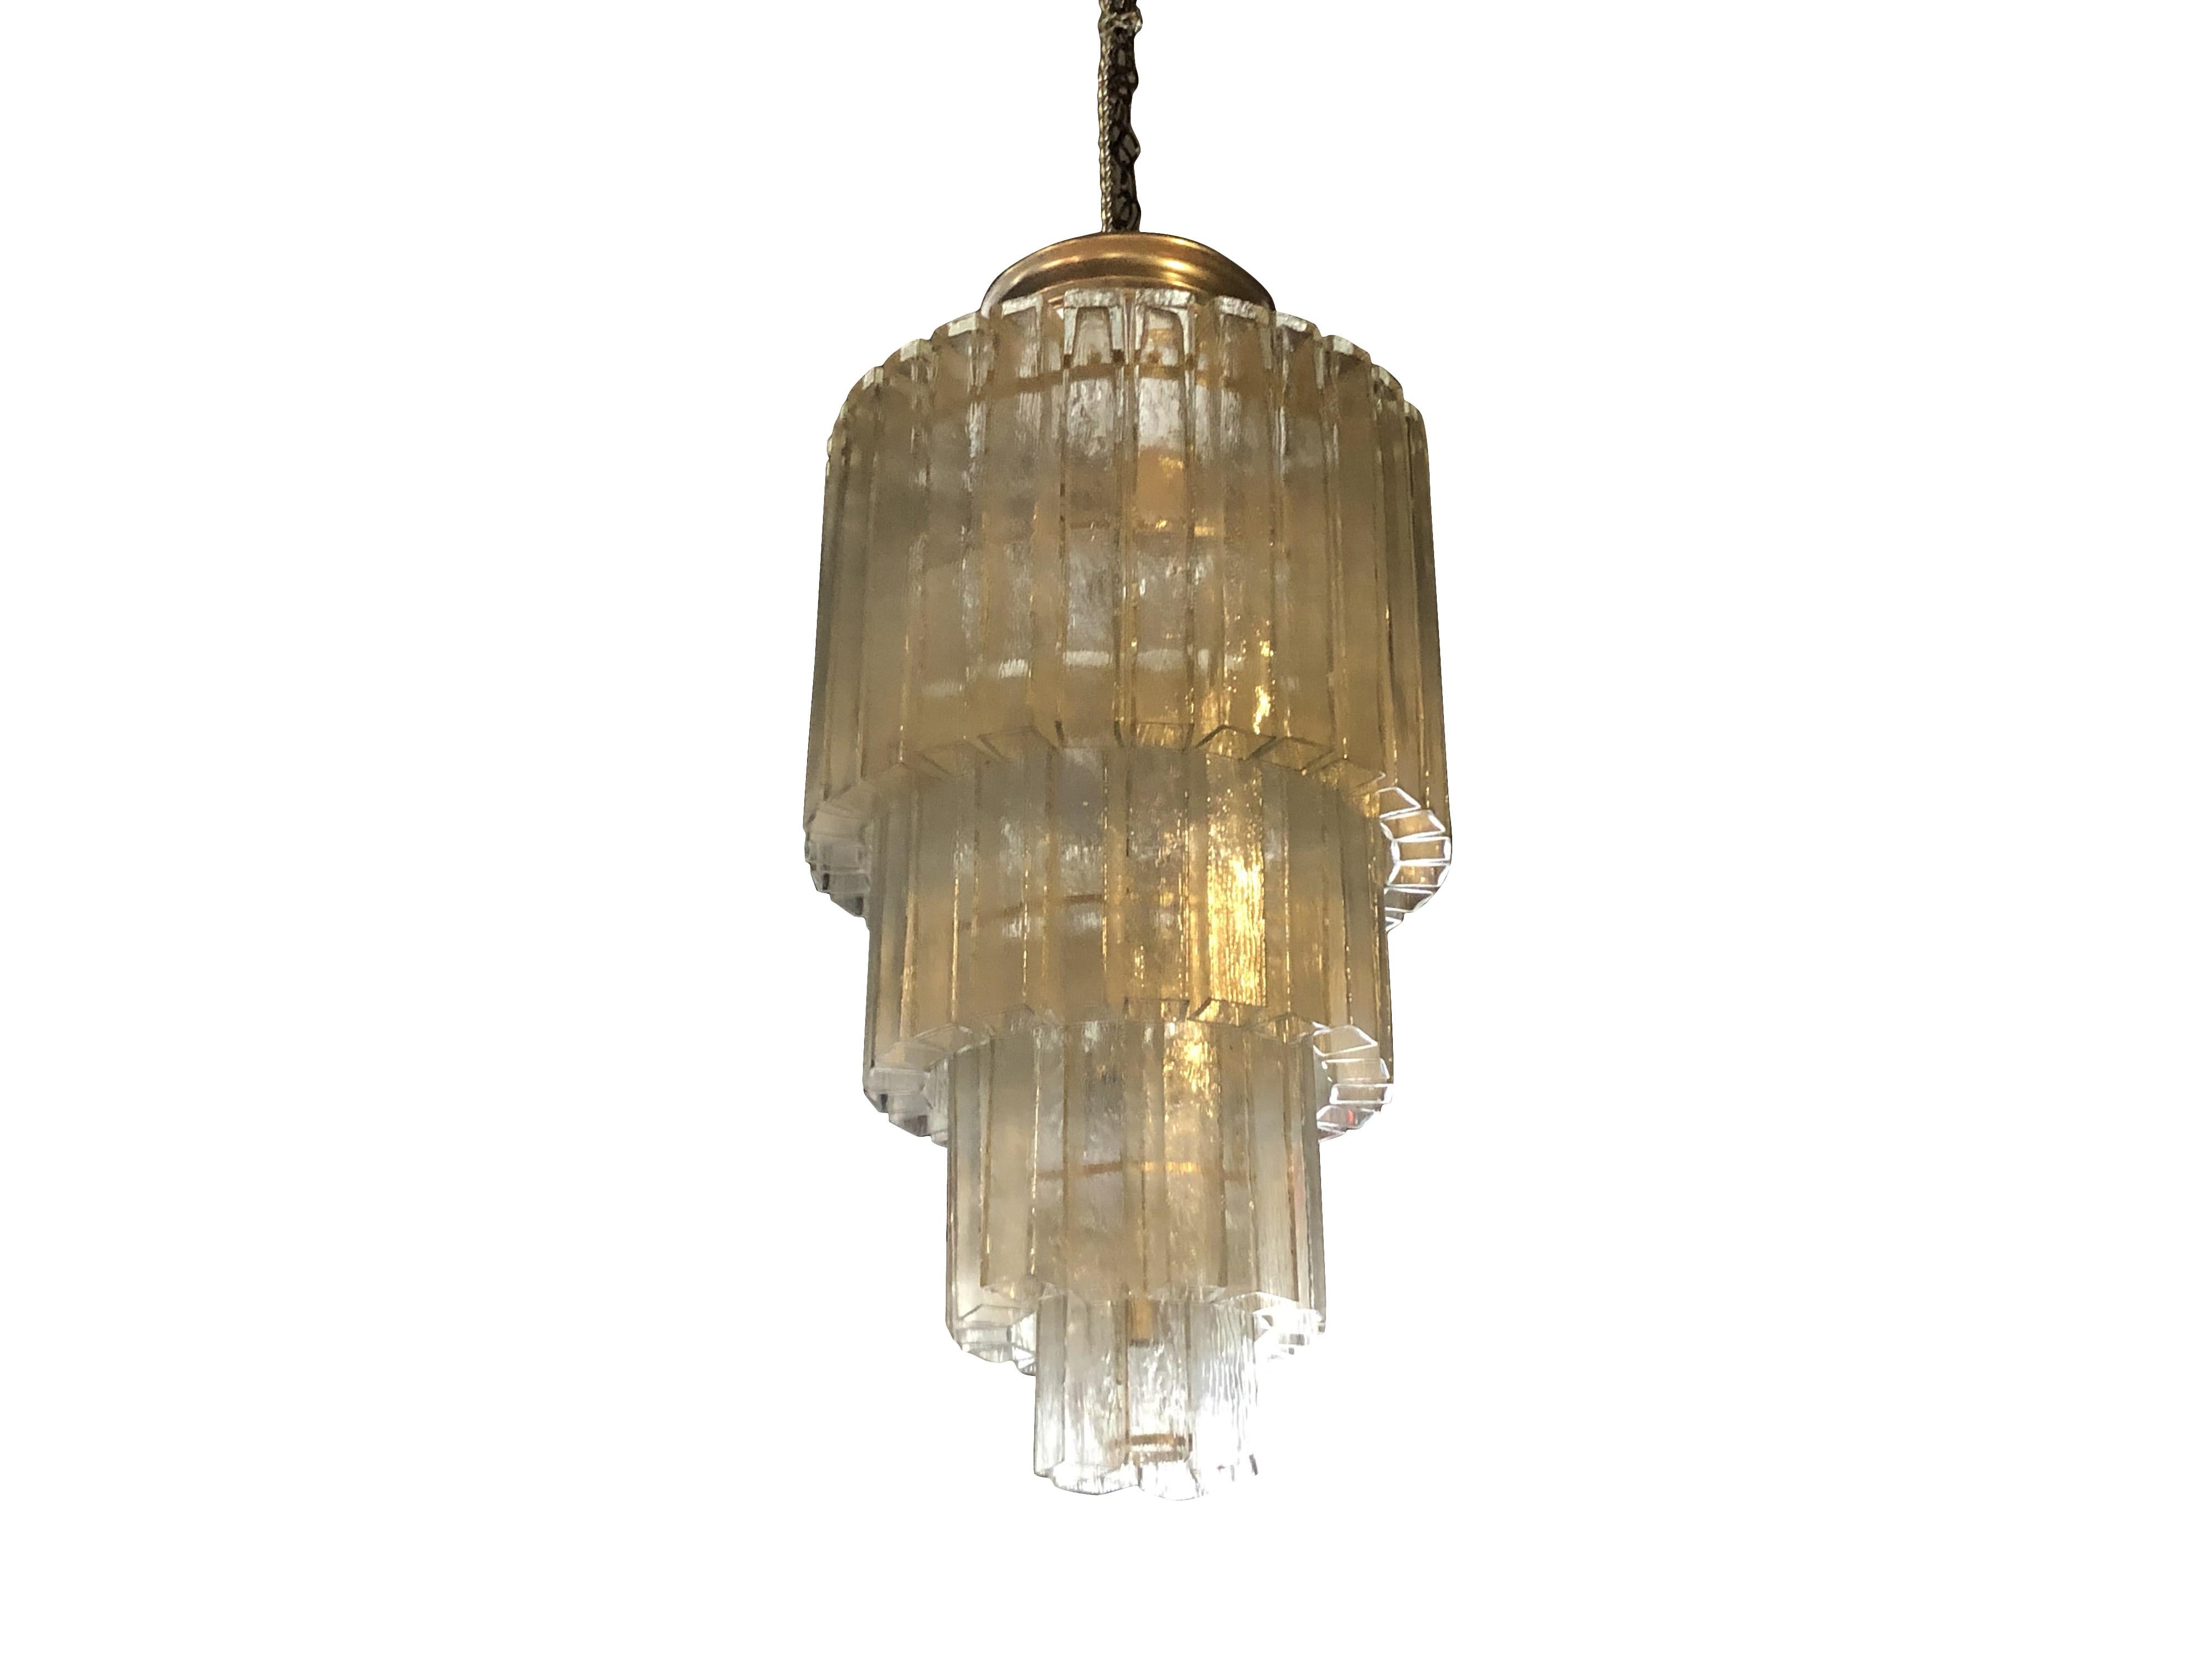 Lustre vintage du milieu du siècle dernier en verre de Murano, pendentif composé de tubes de cristal carrés sur quatre armatures en métal nickelé, en bon état. Le plafonnier et la lampe sont équipés de seize prises de courant. Les verres en cristal